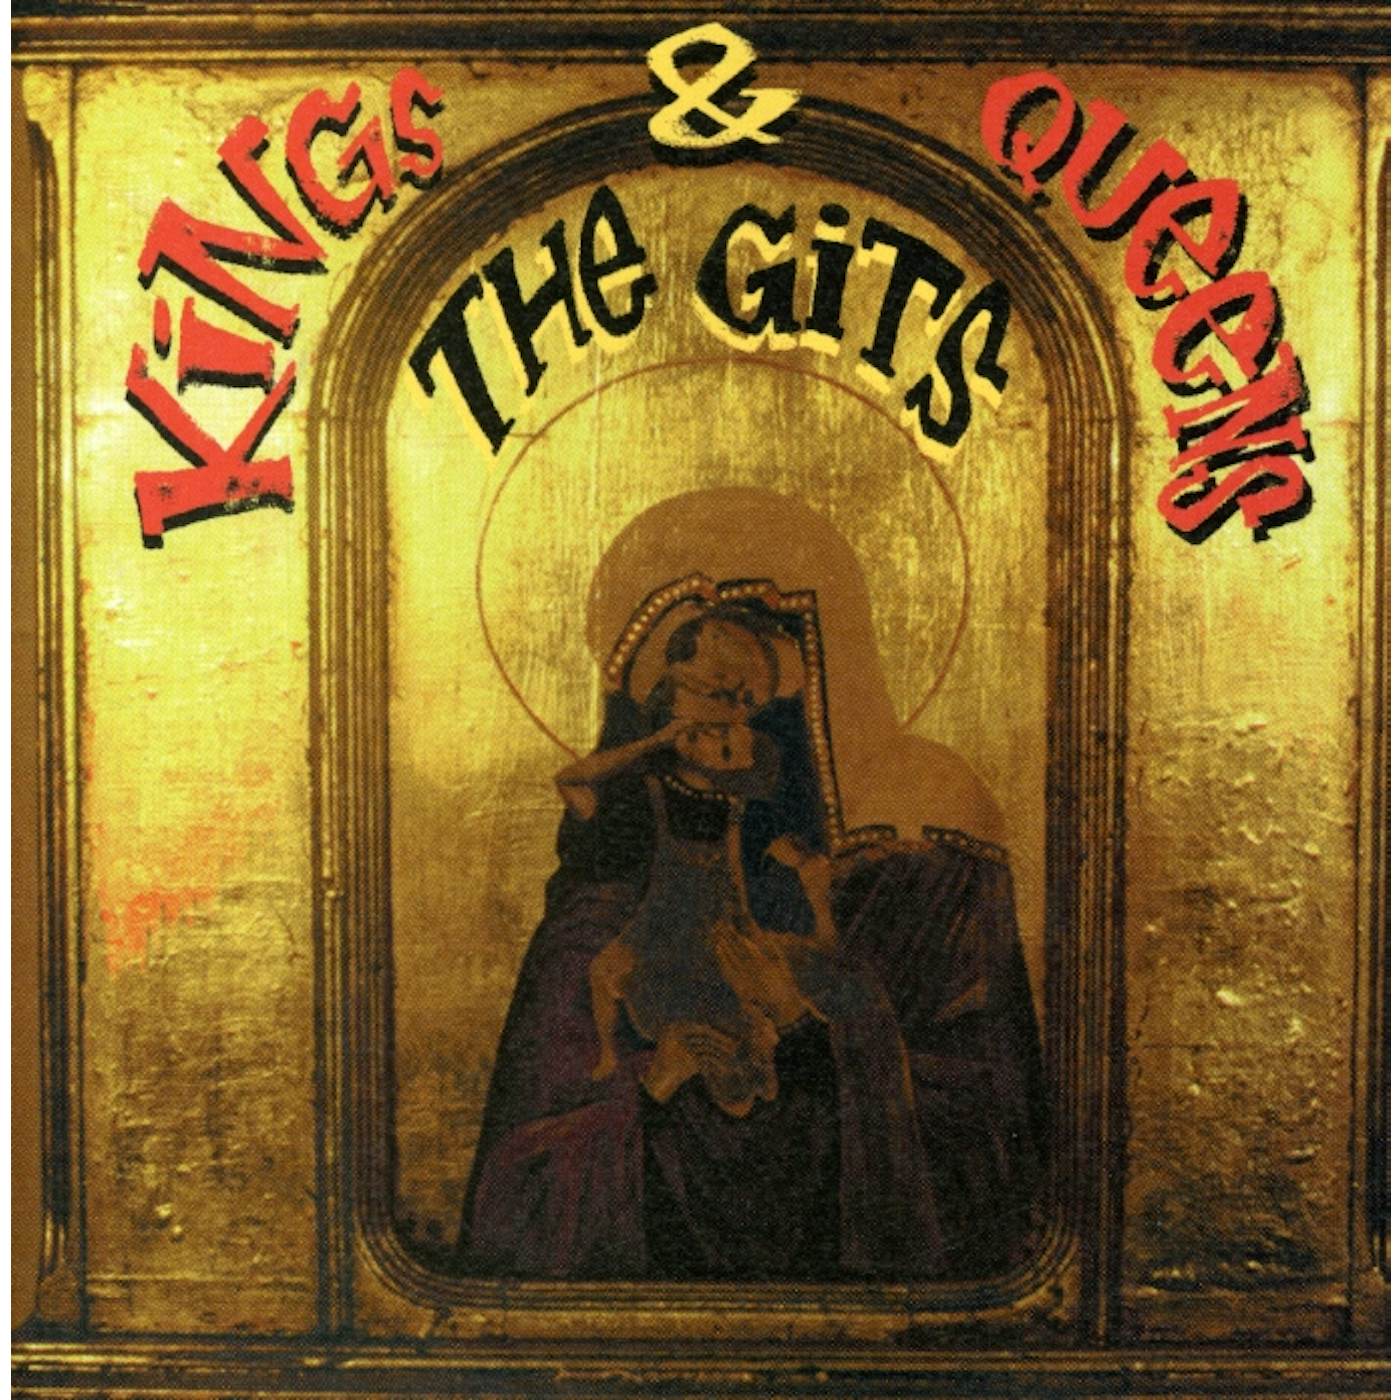 GITS KINGS & QUEENS CD